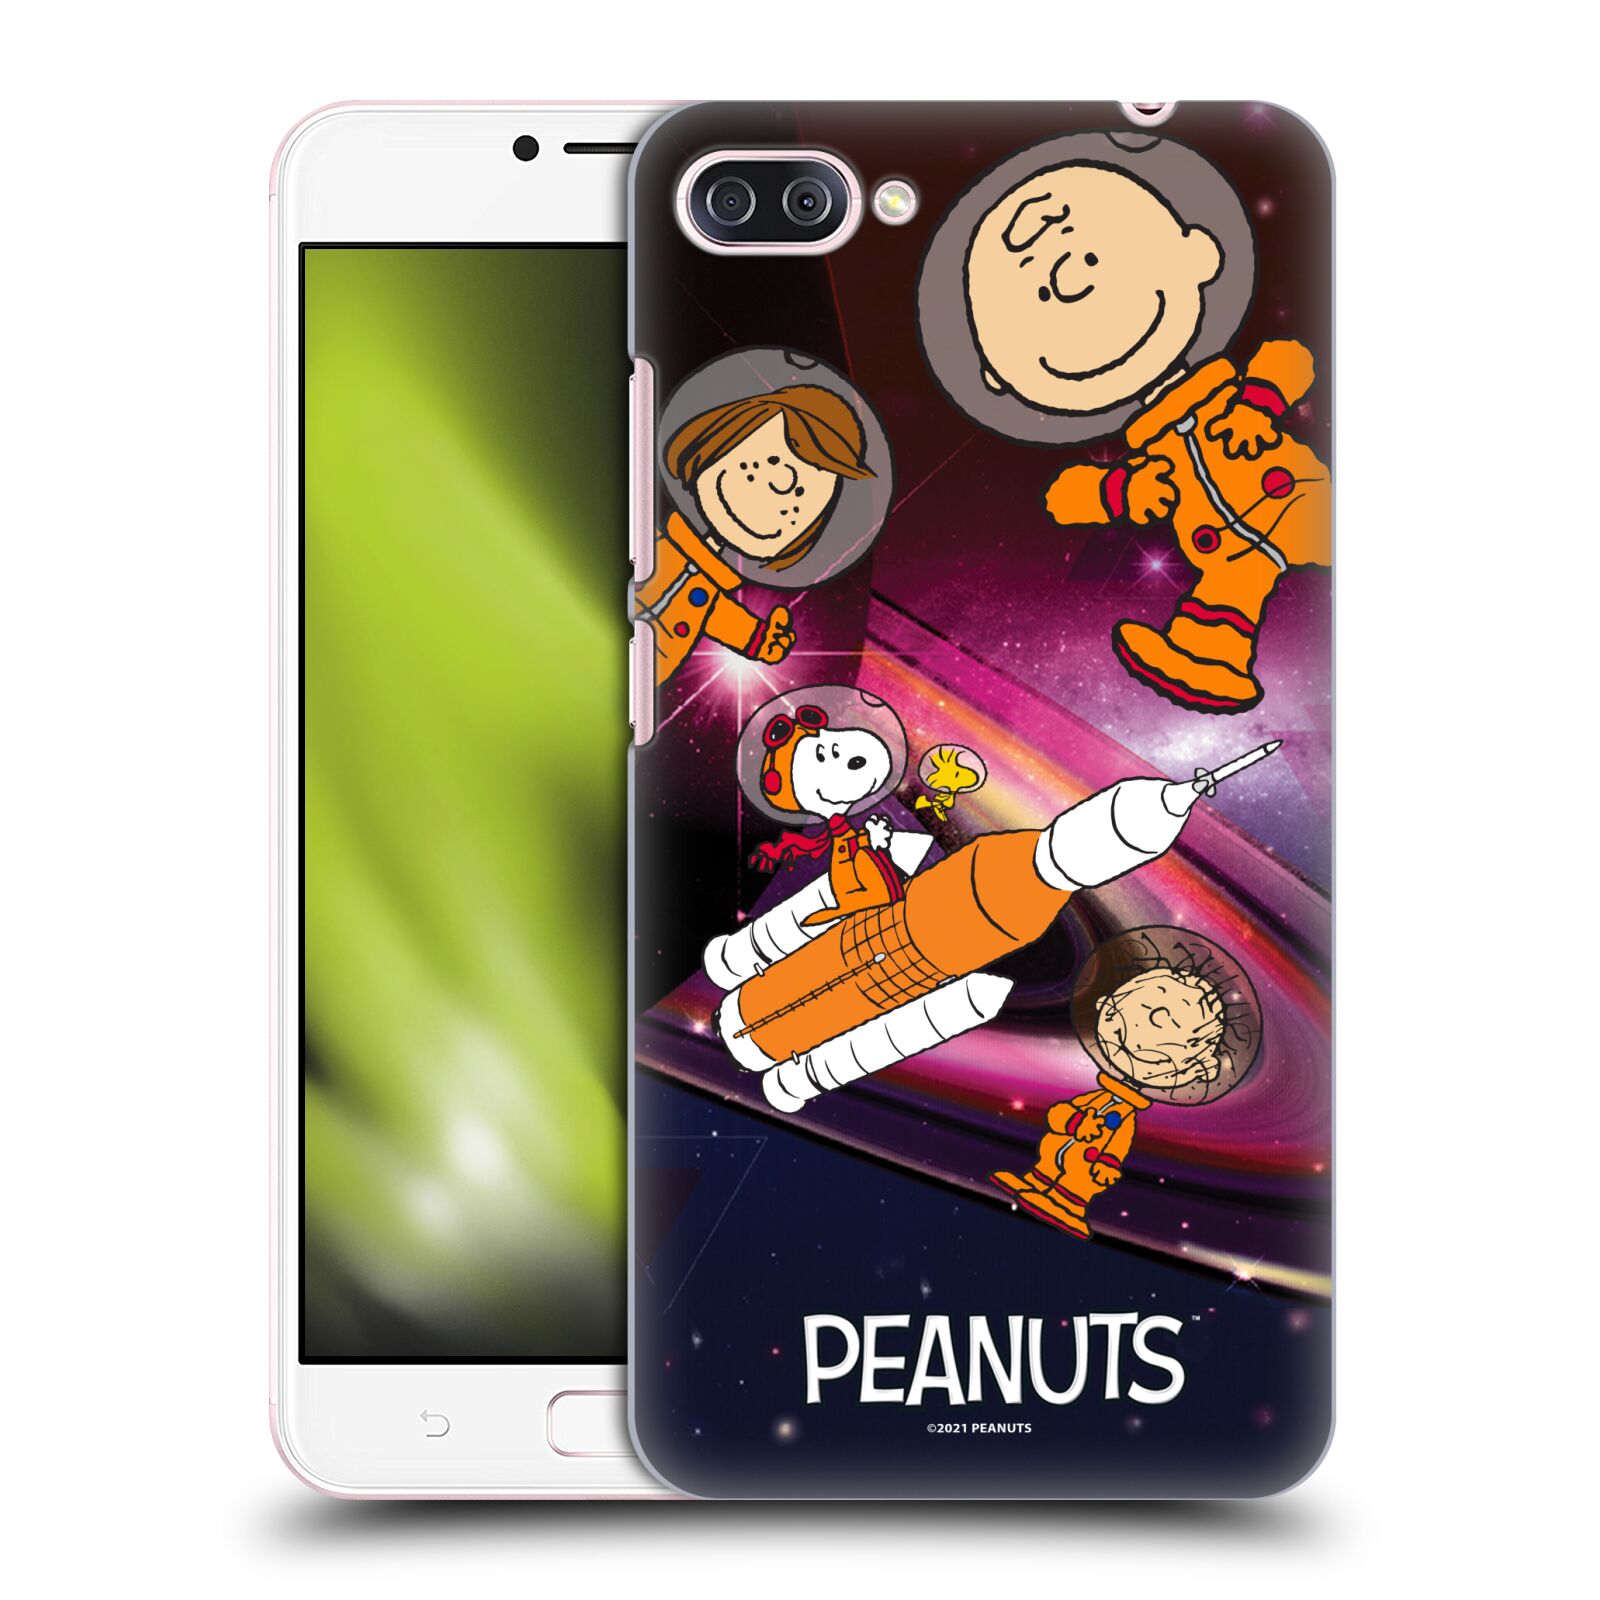 Zadní obal pro mobil Asus Zenfone 4 MAX / 4 MAX PRO (ZC554KL) - HEAD CASE - Snoopy - Pejsek Snoopy a jeho kamarádi ve vesmíru